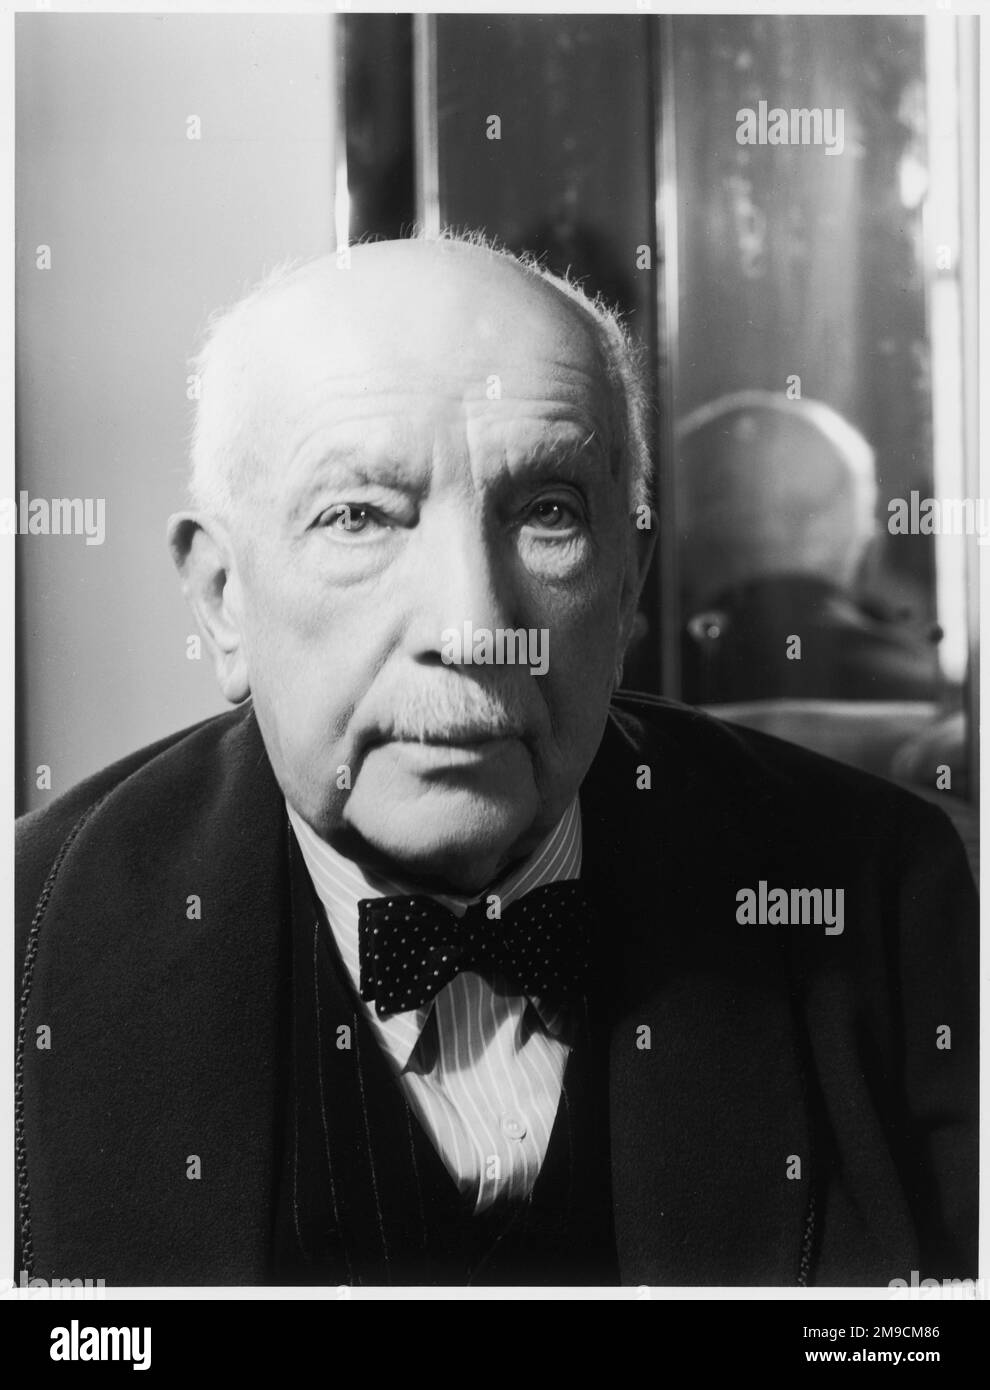 RICHARD STRAUSS compositeur allemand dans la vieillesse, avec un miroir en arrière-plan Banque D'Images